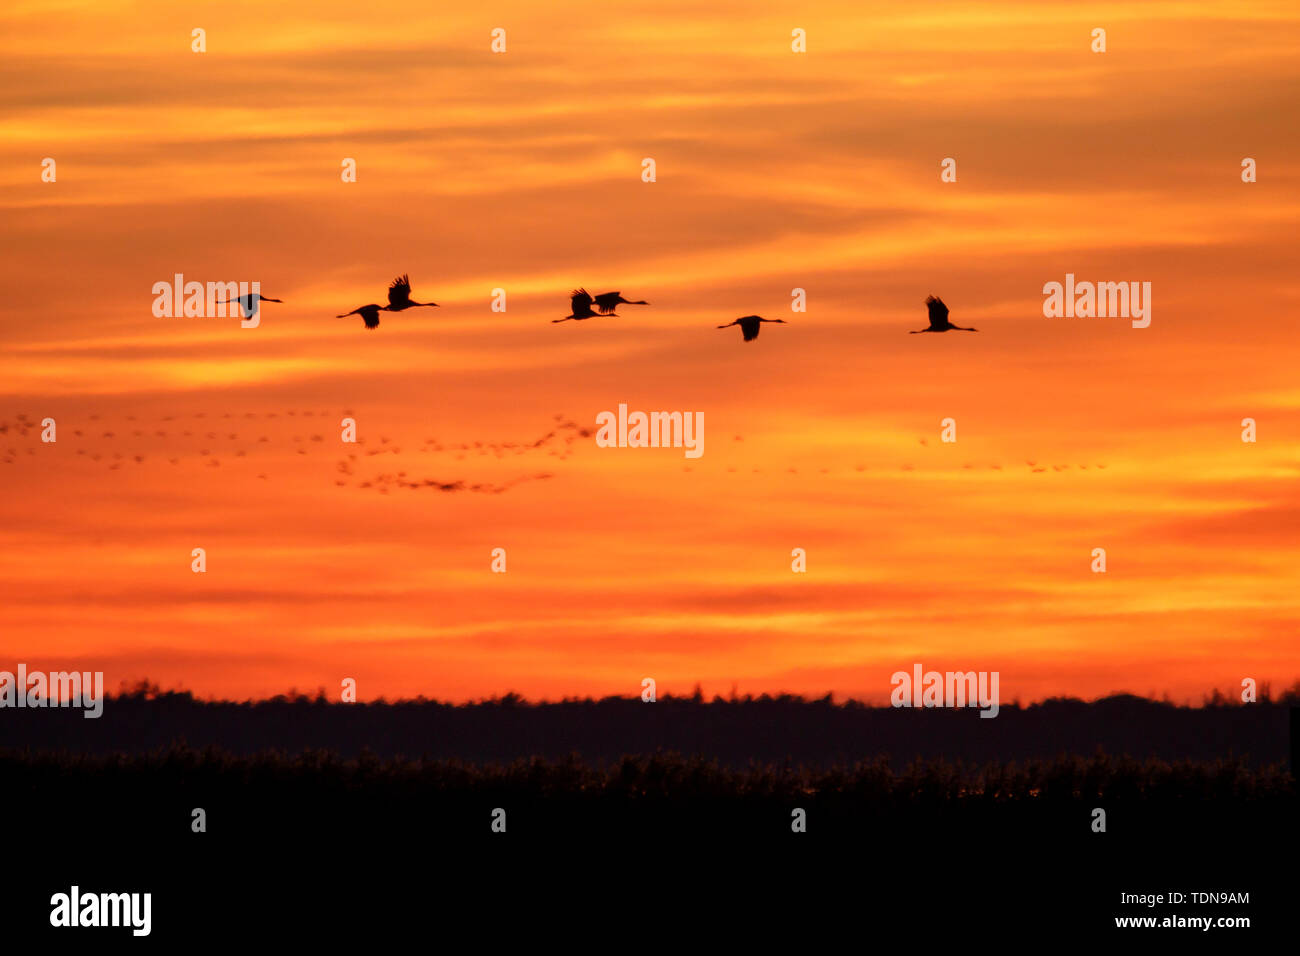 common crane, (Grus grus), sunrise, wildlife, Nationalpark Vorpommersche Boddenlandschaft, Mecklenburg-Vorpommern, Germany Stock Photo